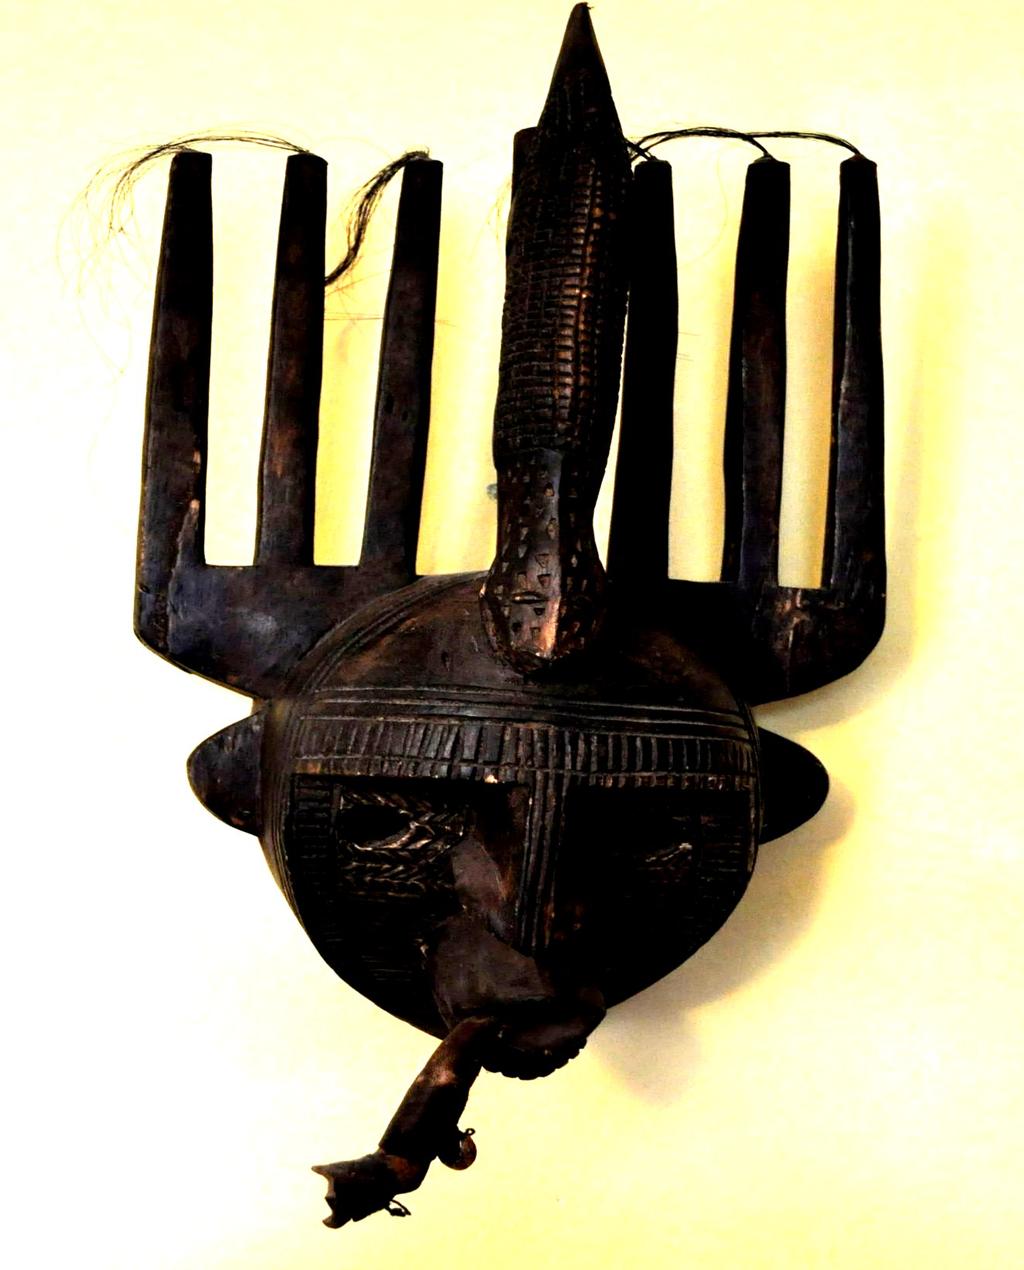 MALI Bambara, maska n domo używana